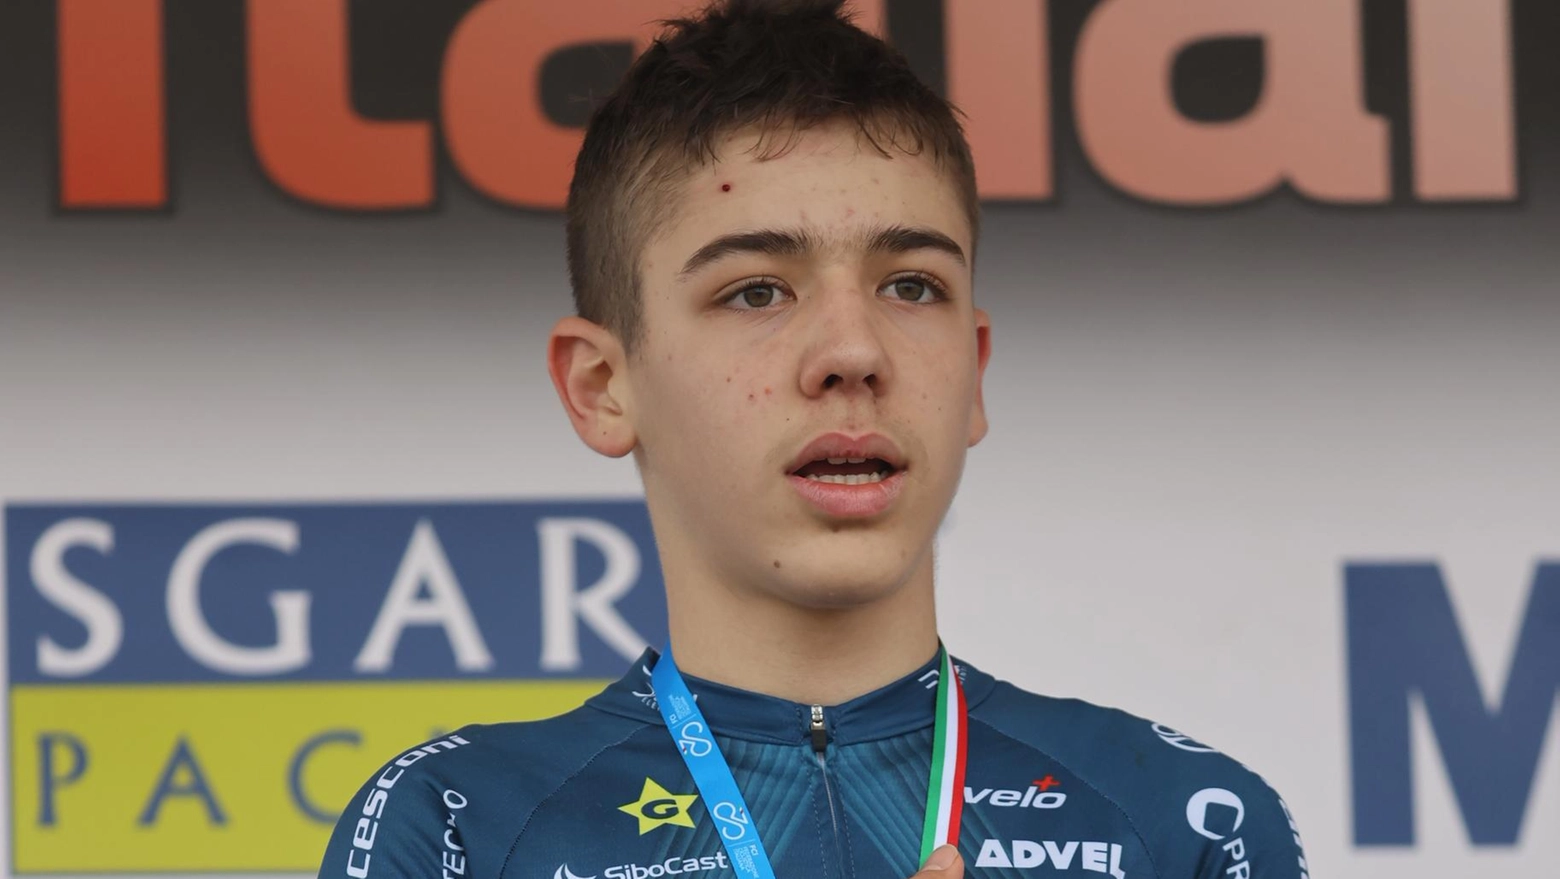 Il giovane ciclista monzese Matteo Jacopo Gualtieri si distingue nella Mountain Bike con un secondo posto a San Zeno Montagna, confermando la sua crescita nelle gare di Cross Country. Altri risultati positivi per i talenti locali.